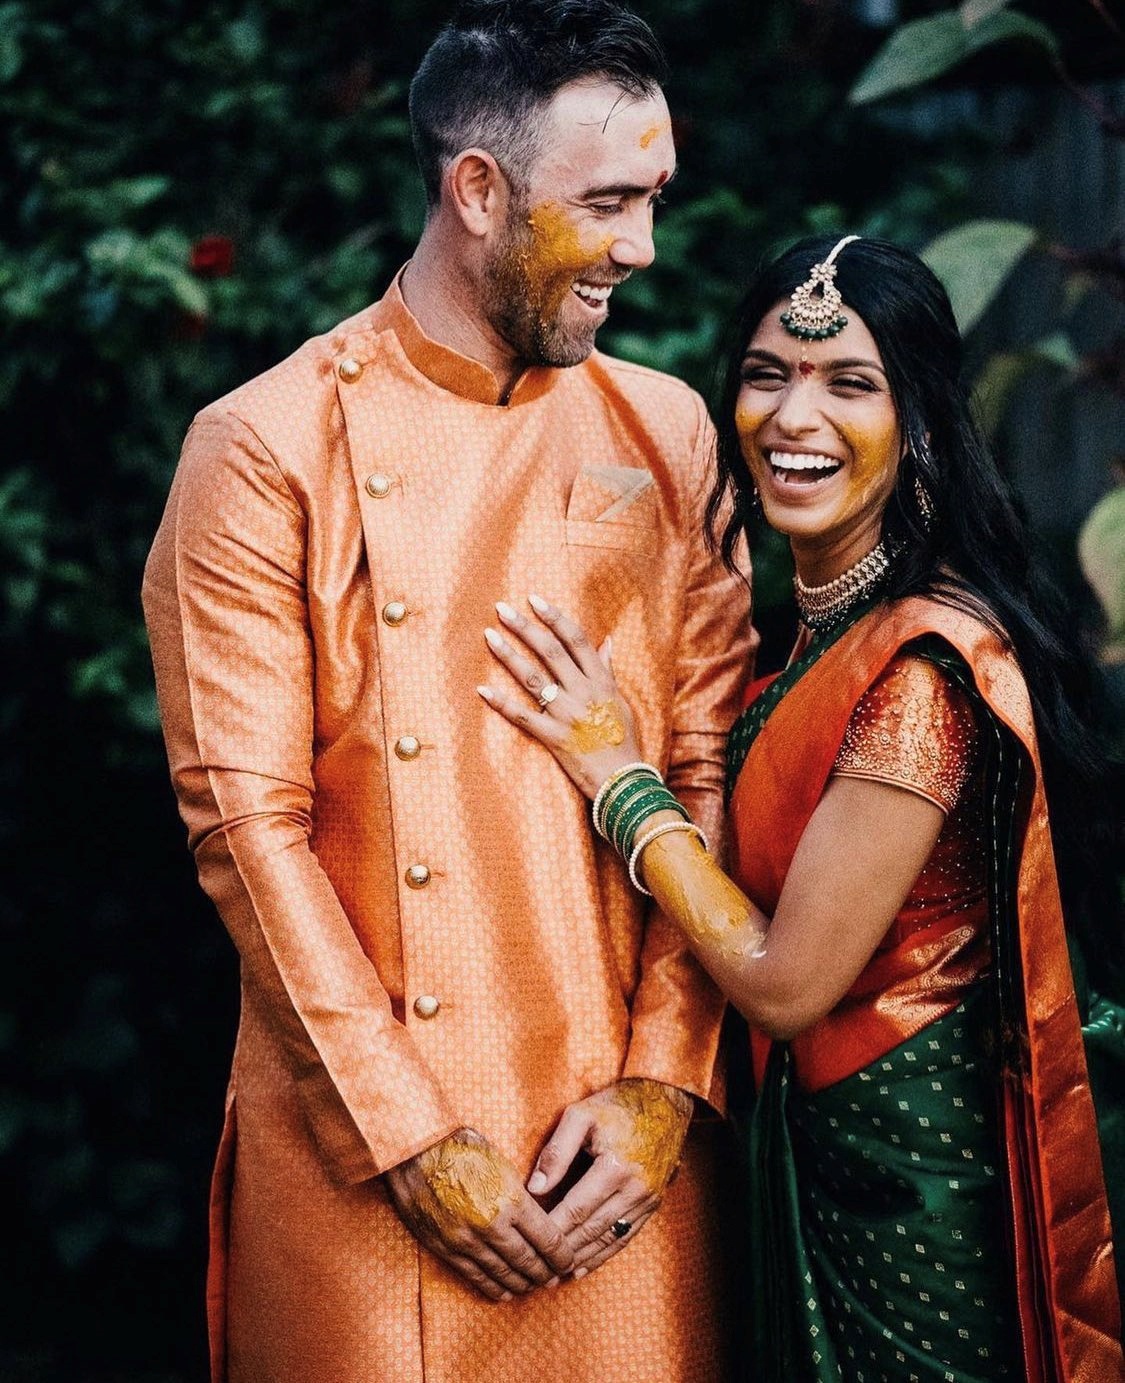 maxwell hindu marriage